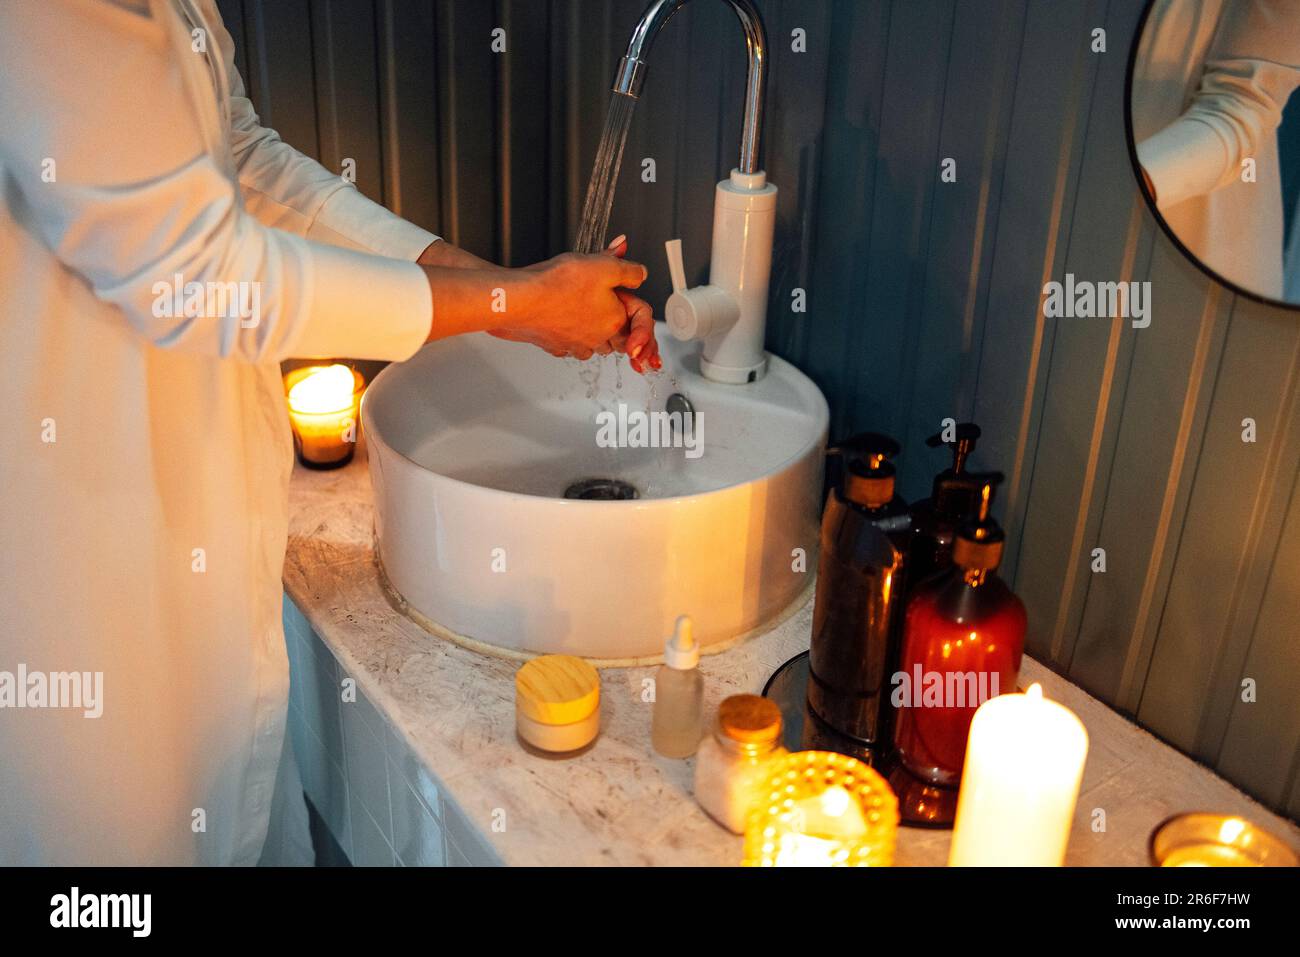 Une jeune fille en vêtements blancs lave ses mains sous l'eau courante au-dessus de l'évier. Cosmétiques et détergents, bougies parfumées allumées sur une table en marbre. Banque D'Images